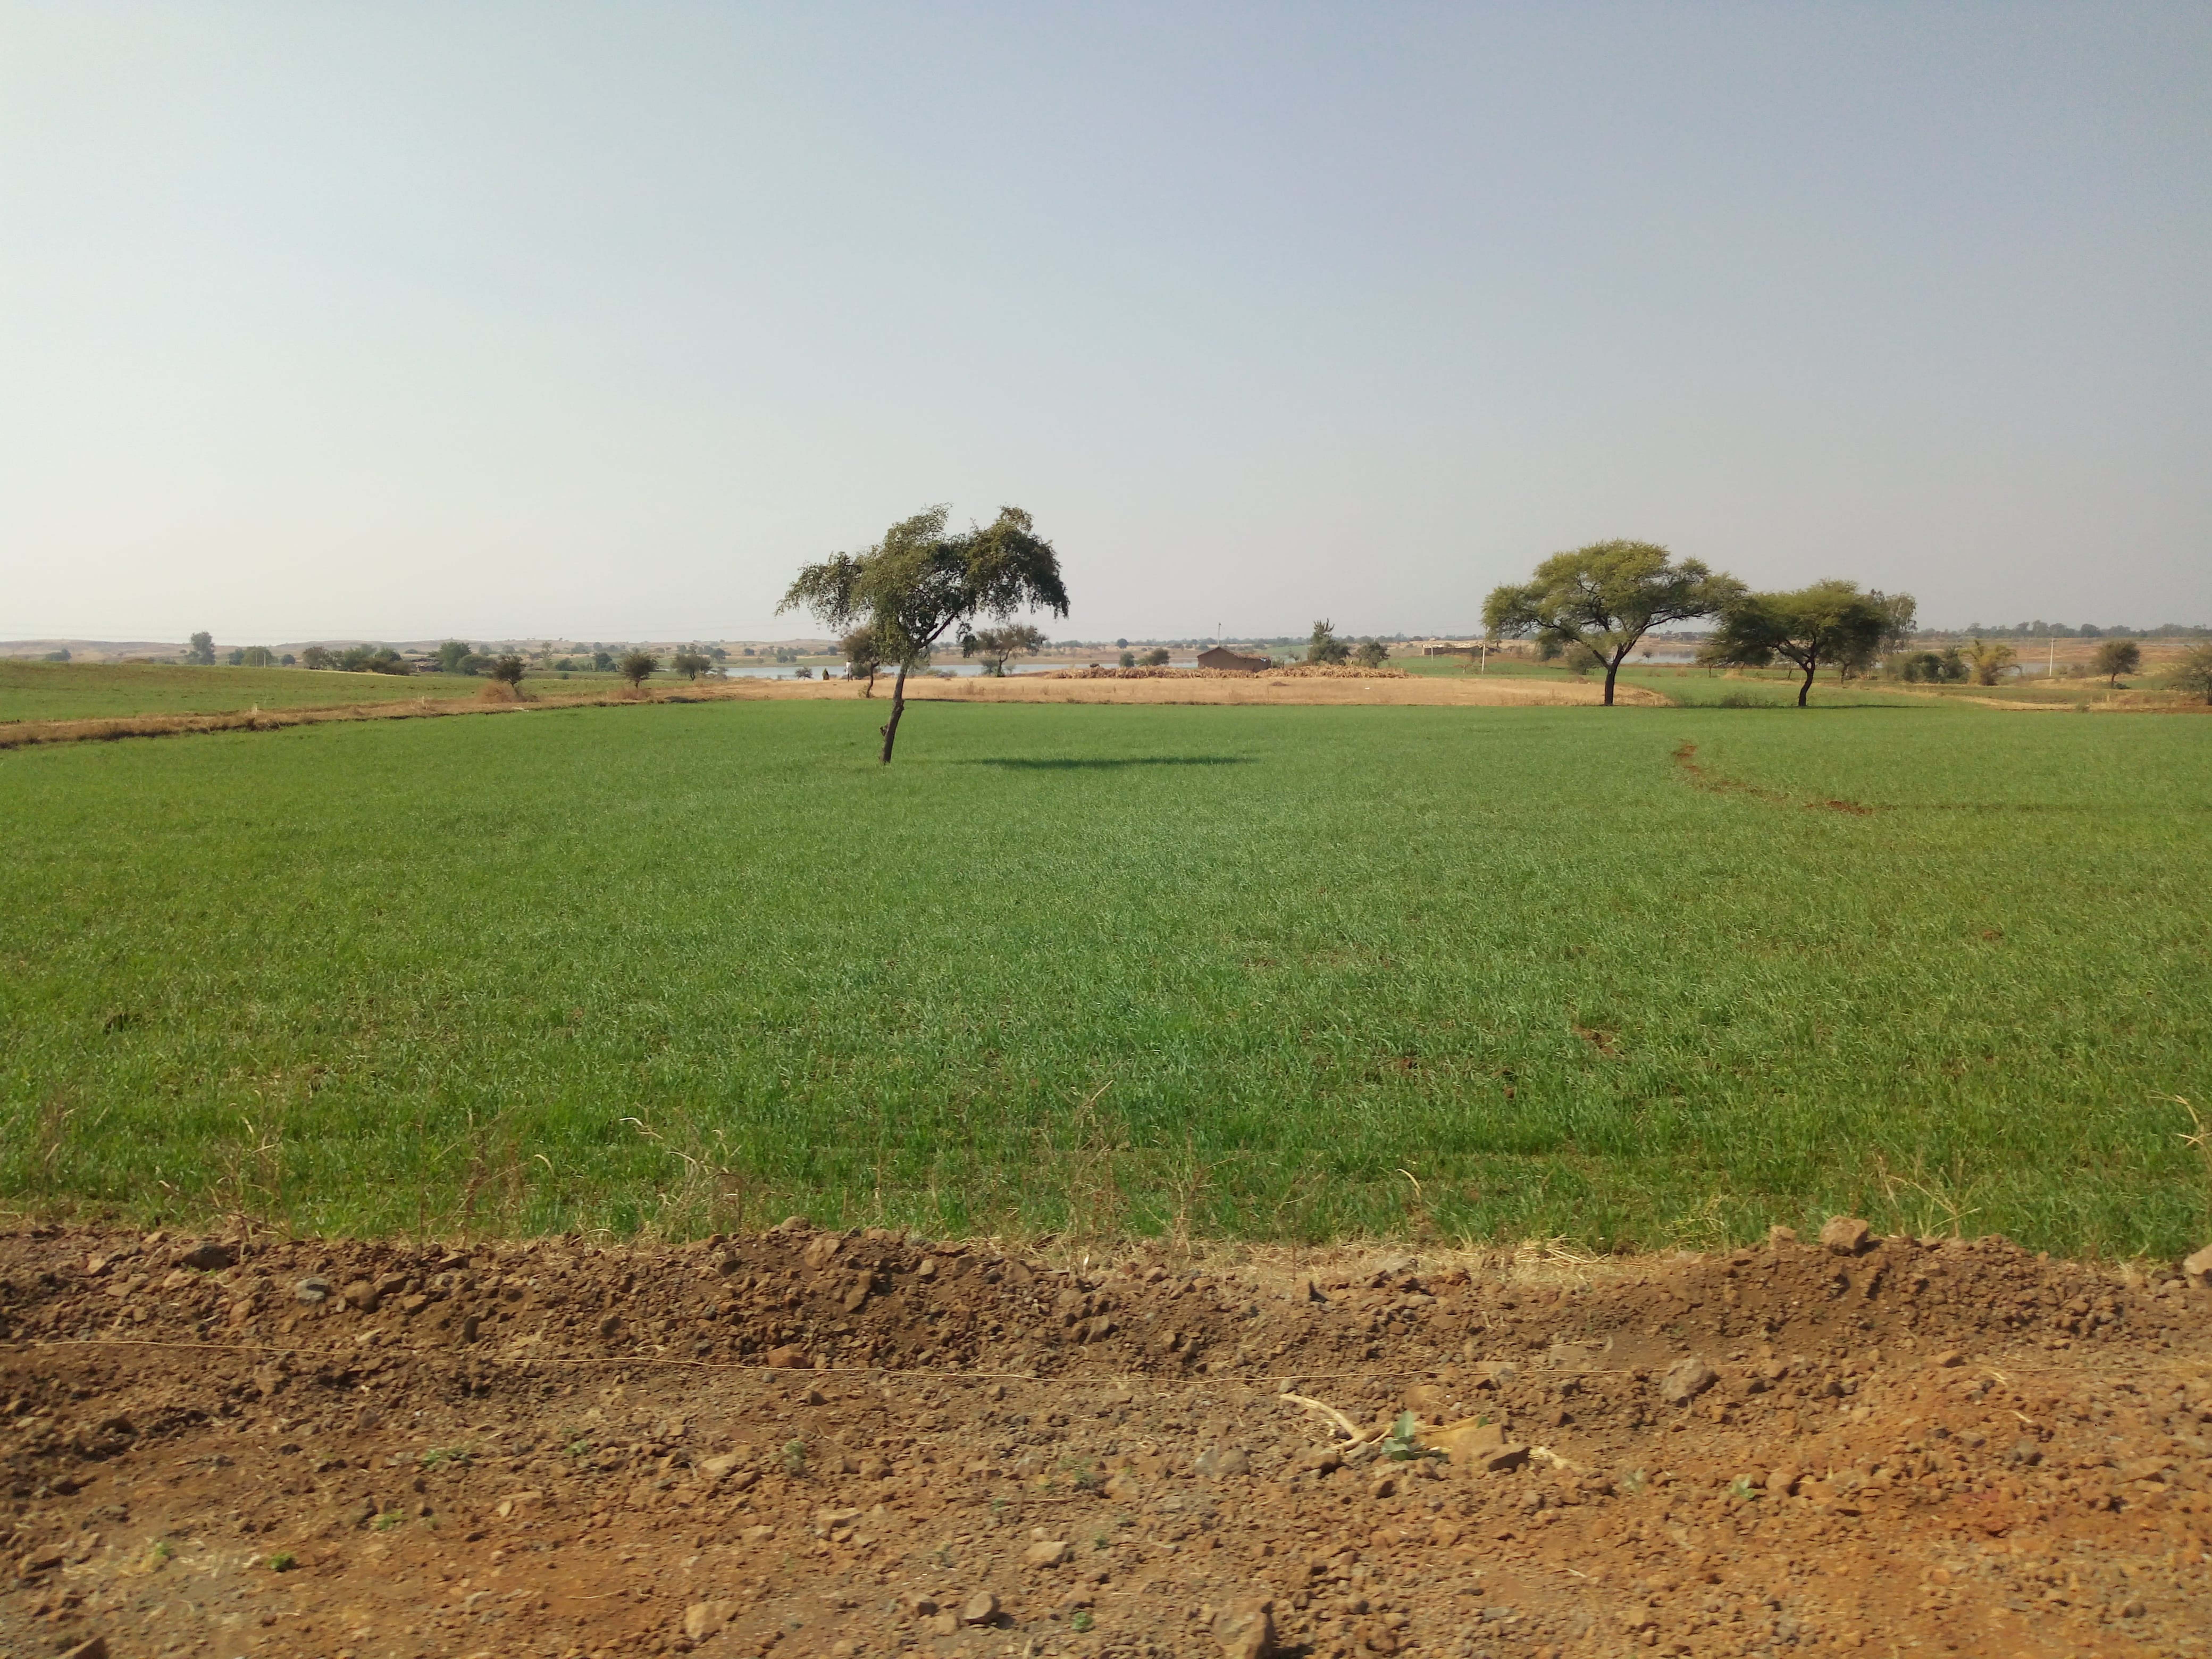 कृषि इंदौर न्यूज: फसलों को दें संतुलित खाद, अंधाधुंध उपयोग से बढ़ रही लागत